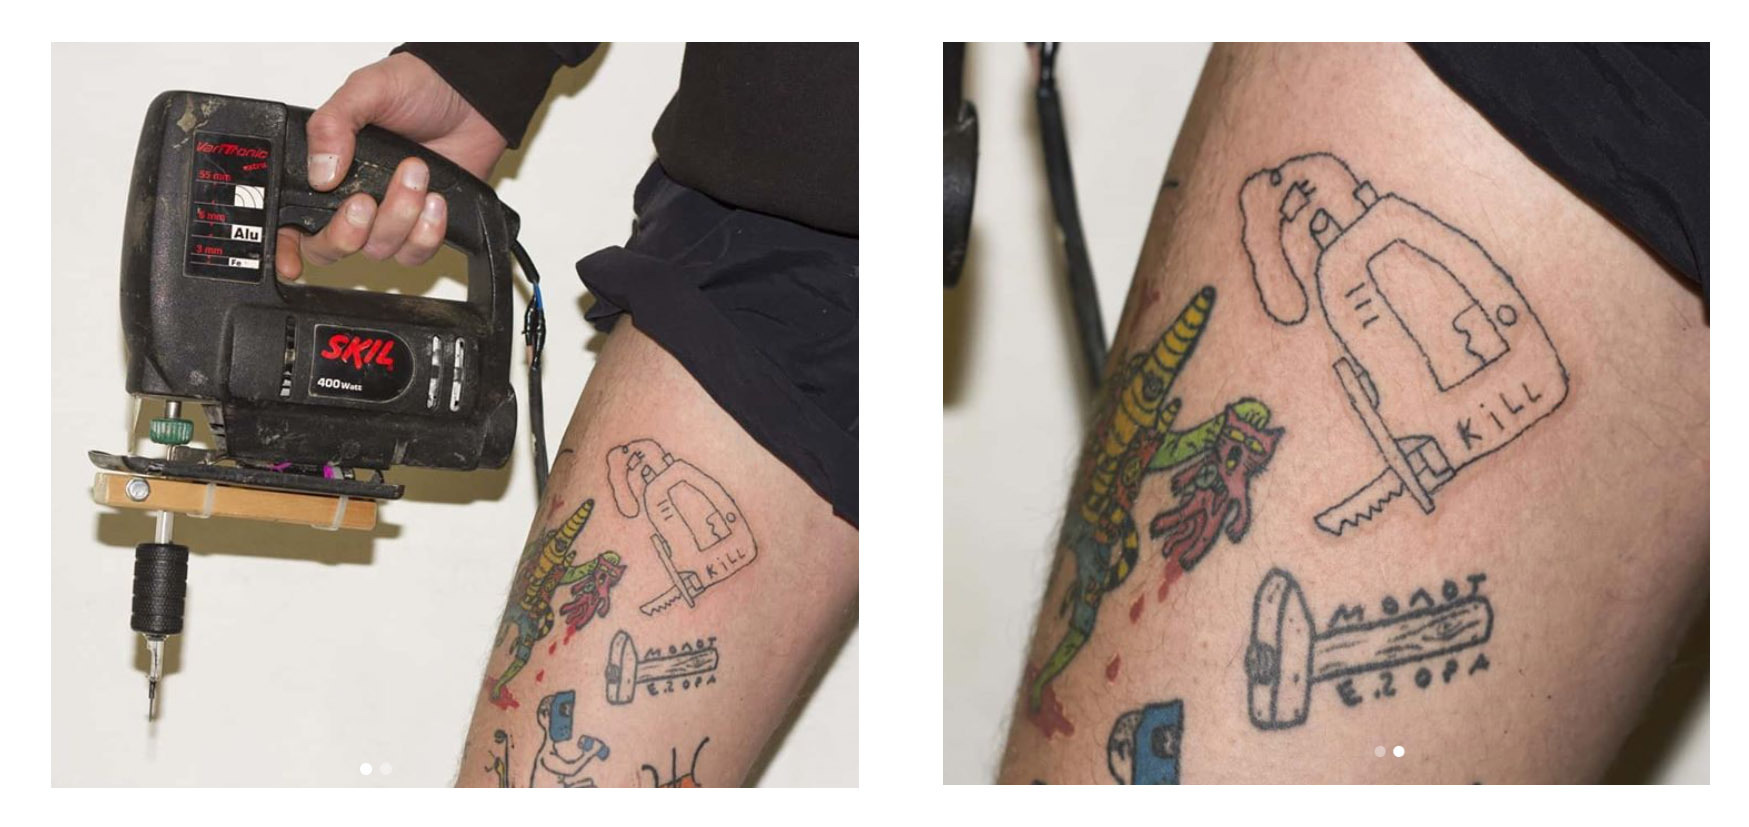 Безопасно ли для здоровья делать много татуировок – отвечает врач